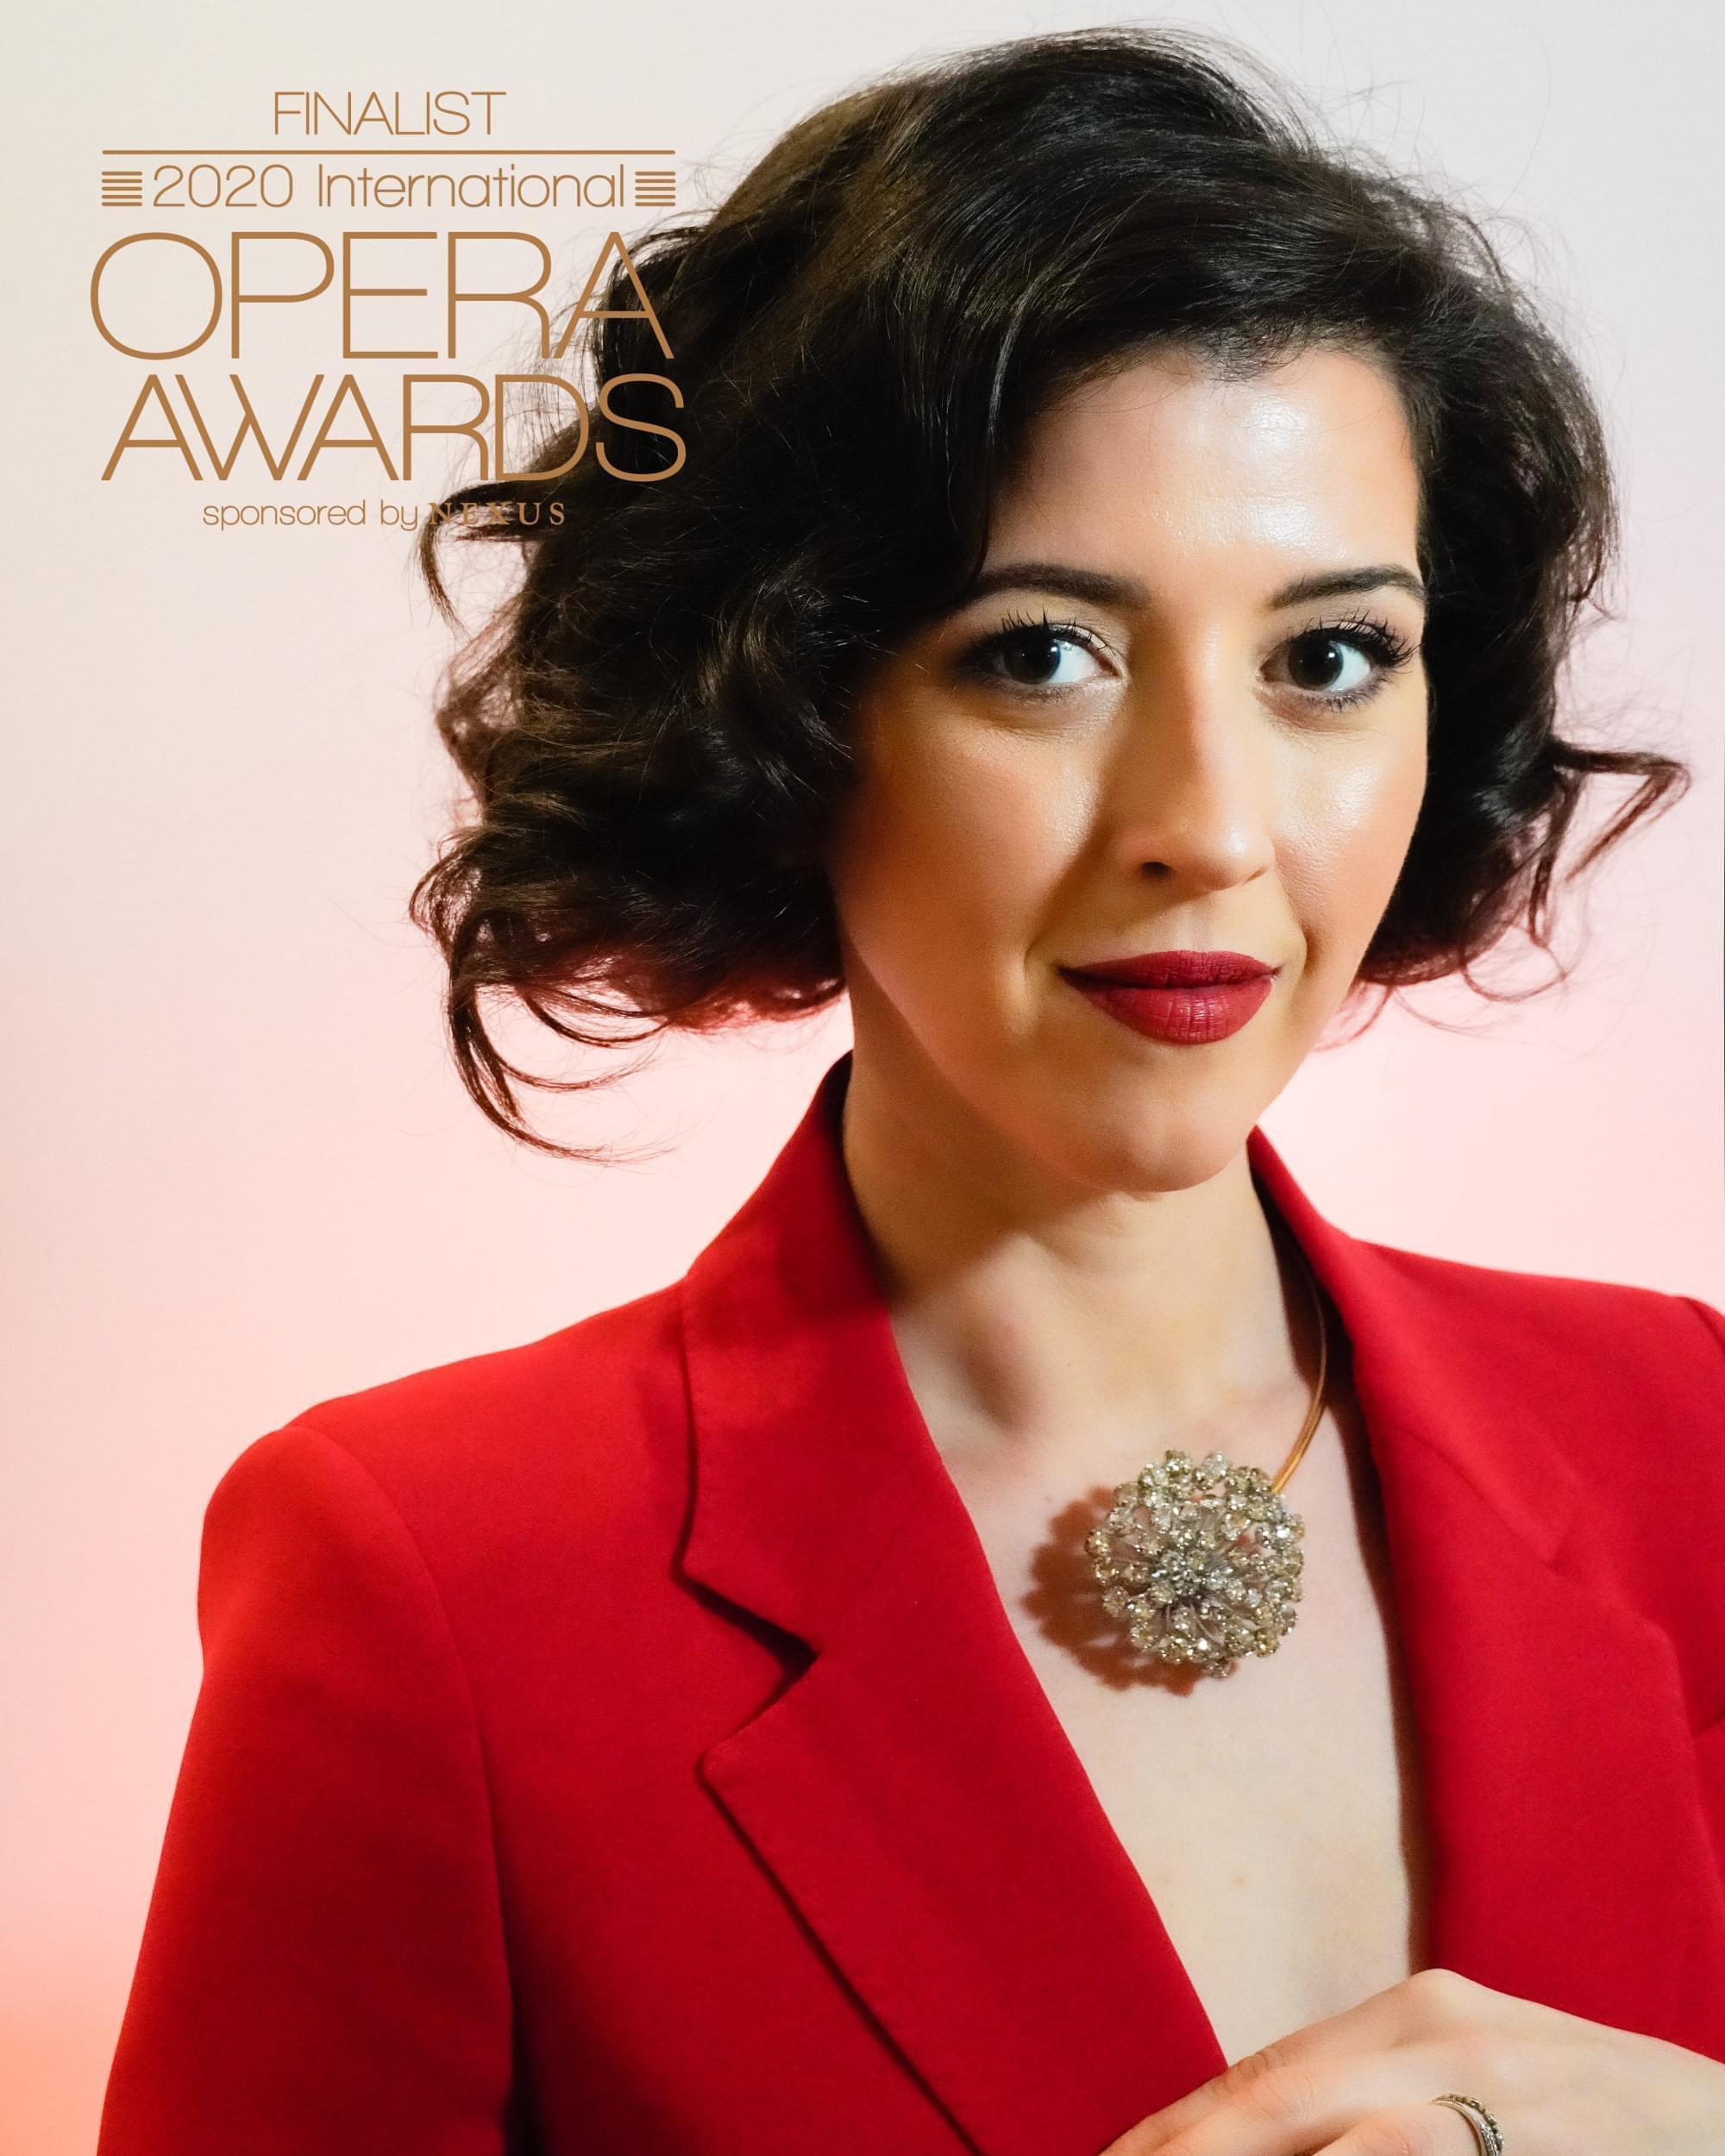 Lisette is nominated for best female singer for the 2020 International Opera Awards